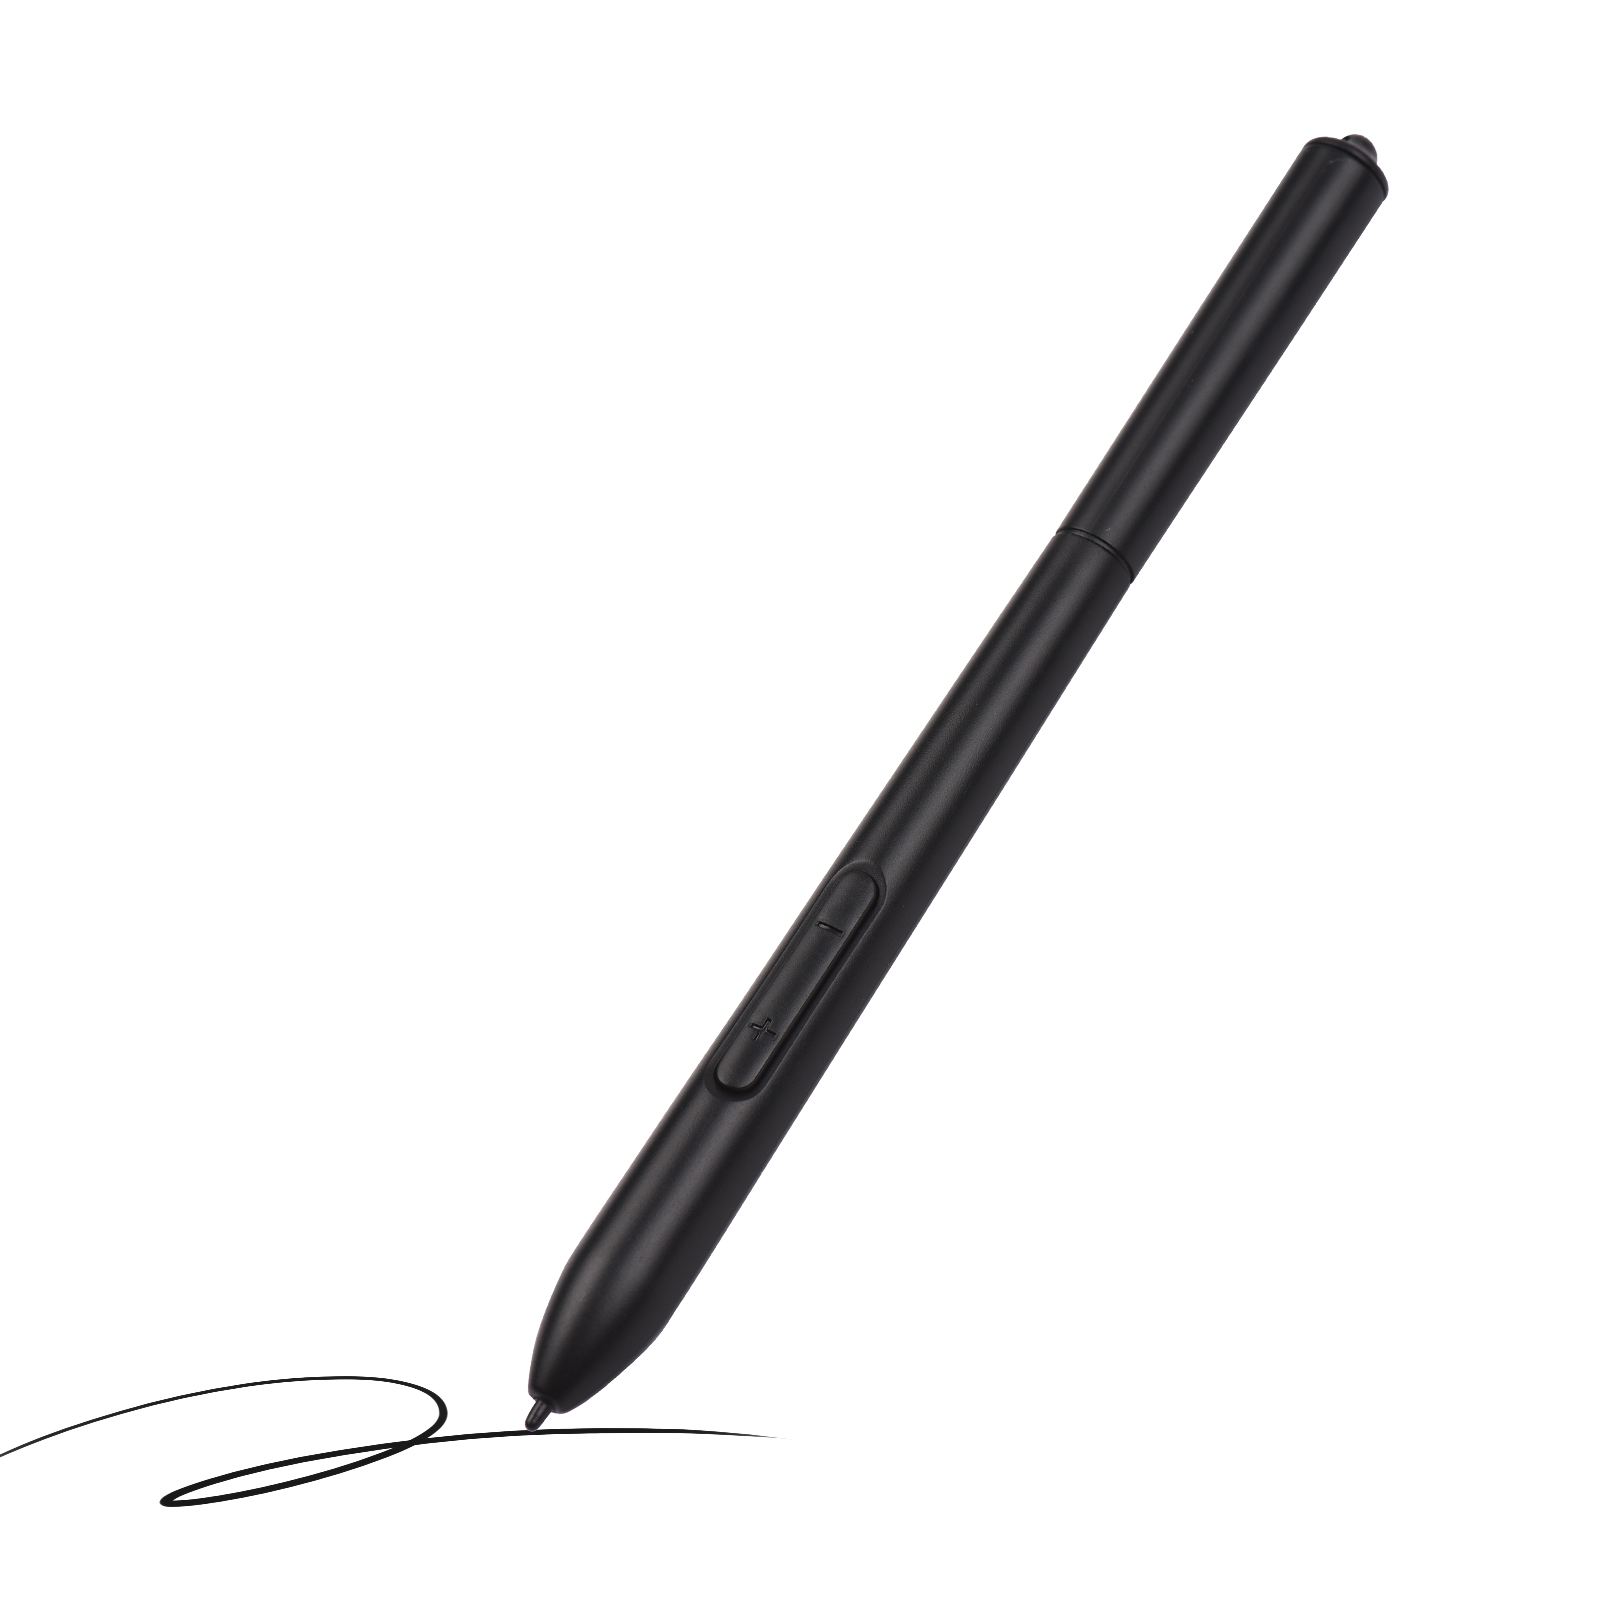 디지털 펜 8192 수준의 압력 감도 배터리없는 스타일러스 펜 도매 T505 그래픽 태블릿에 적합 빠른 배달